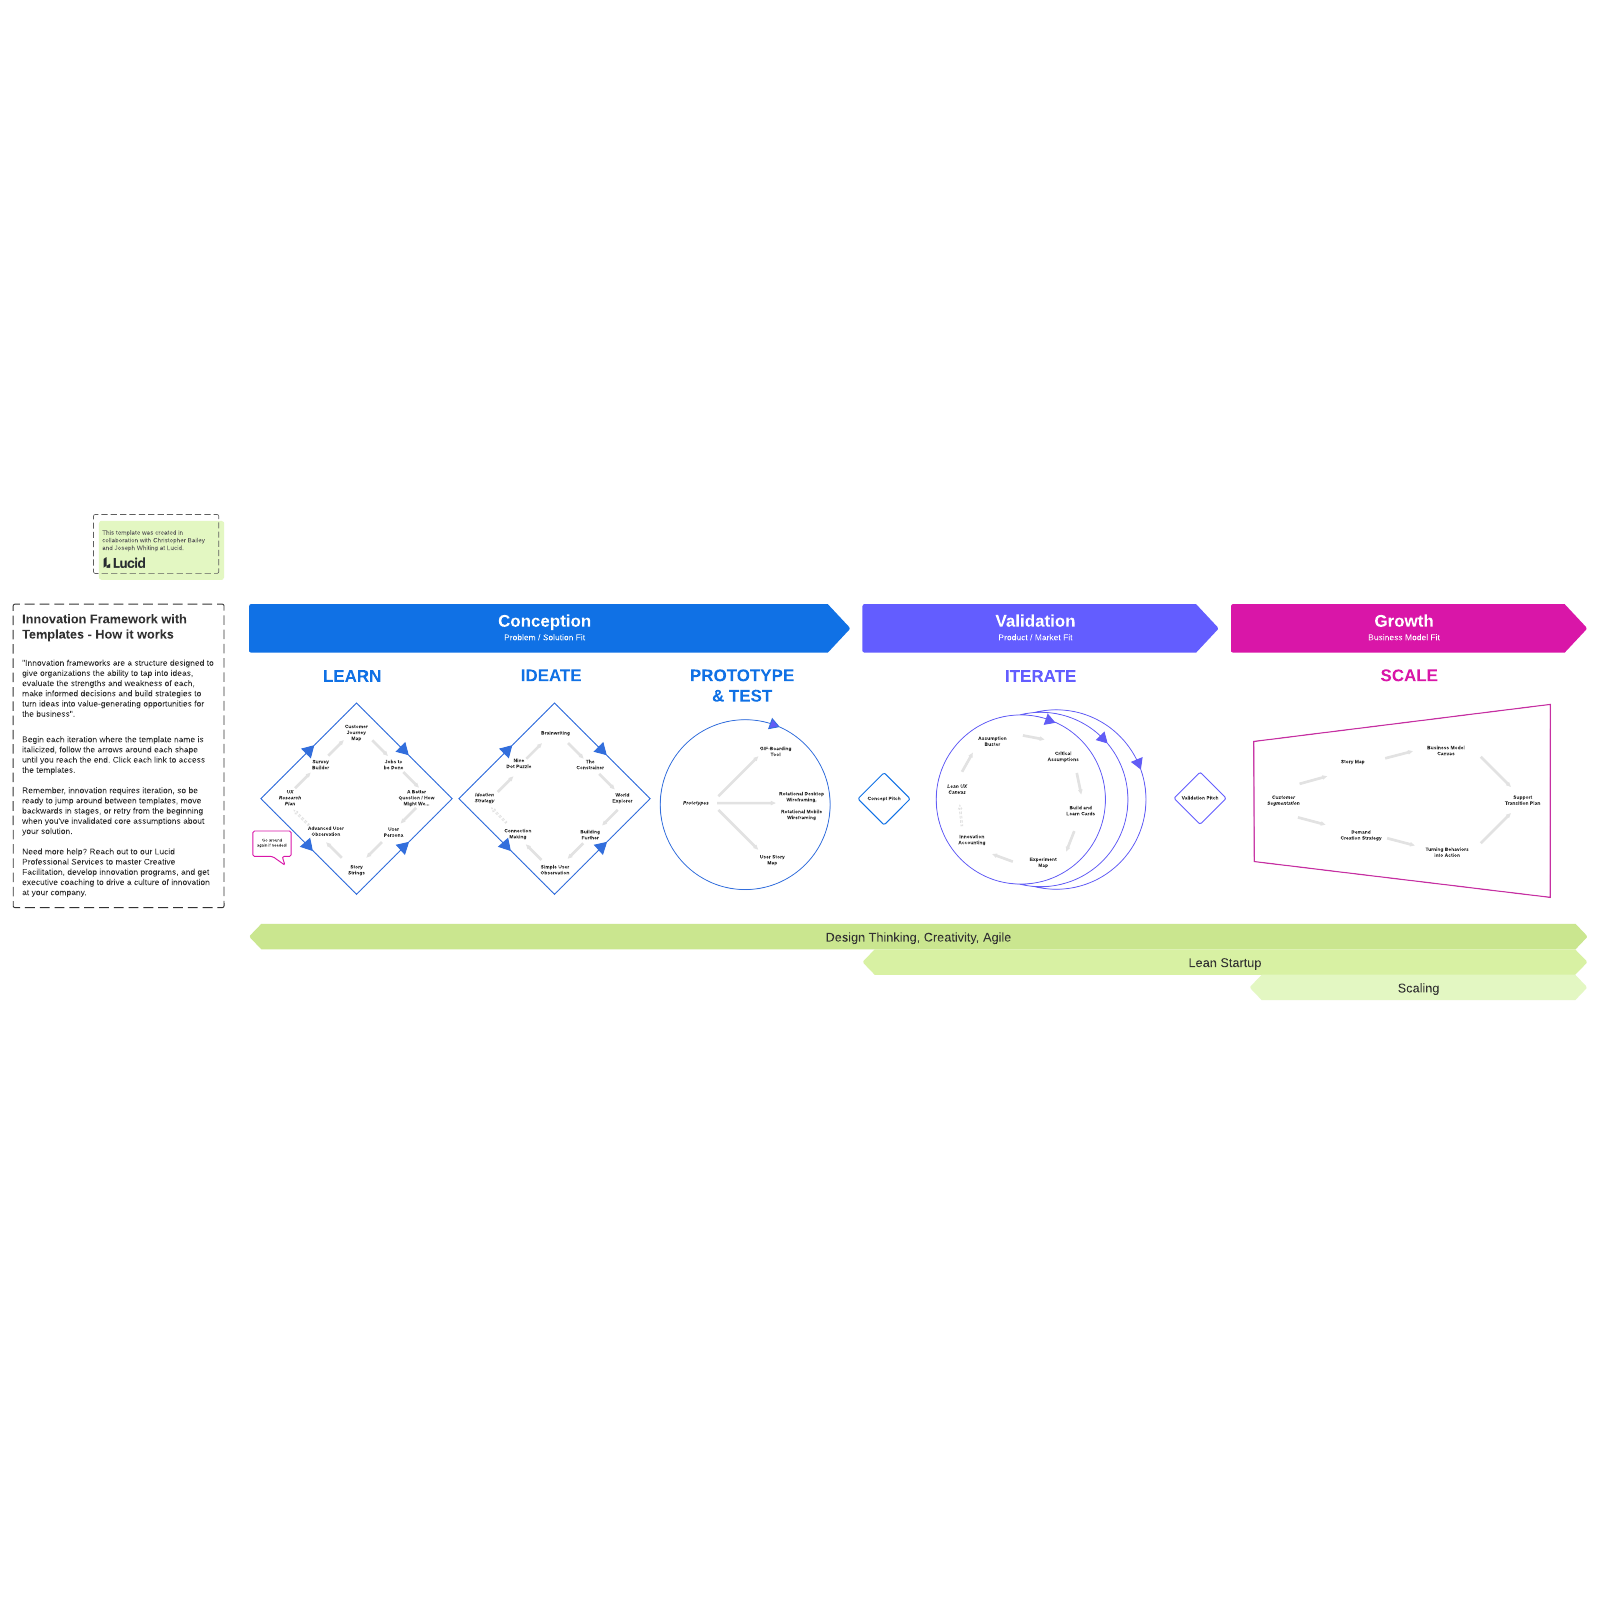 Template of an innovation framework